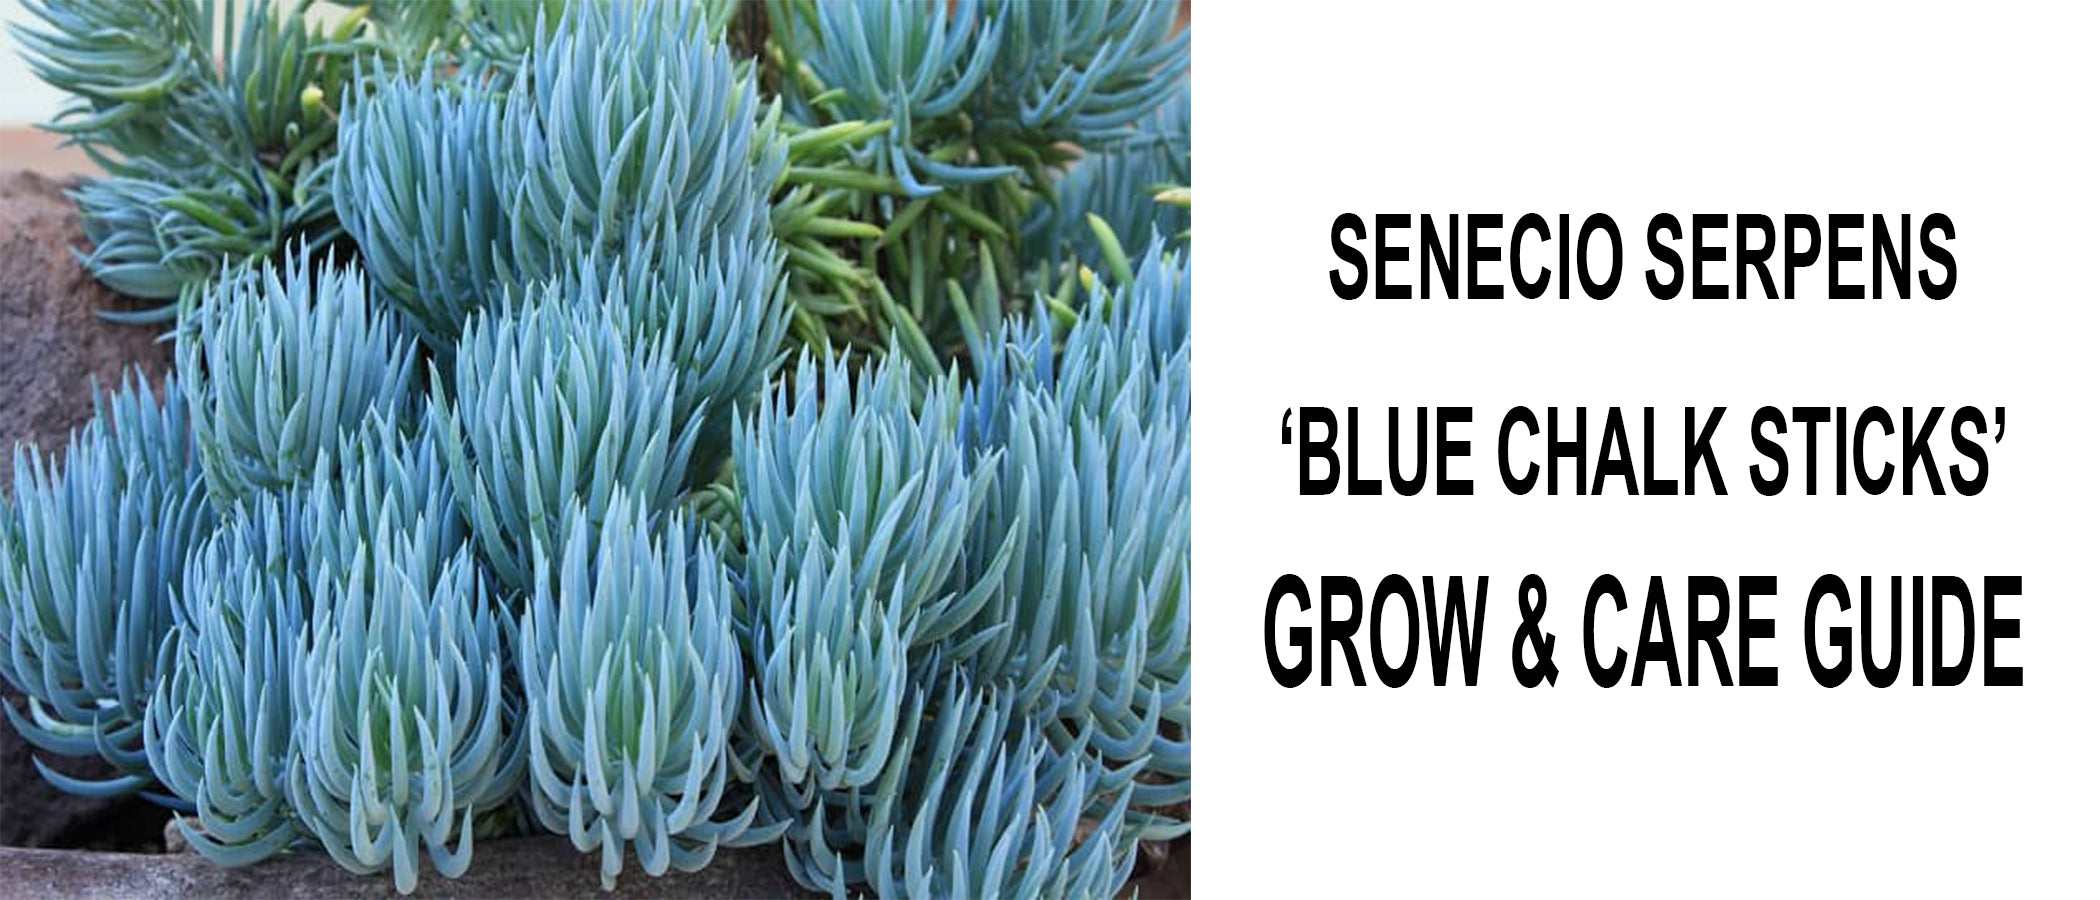 Senecio Serpens 'Blue Chalk sticks' Grow and Care Guide